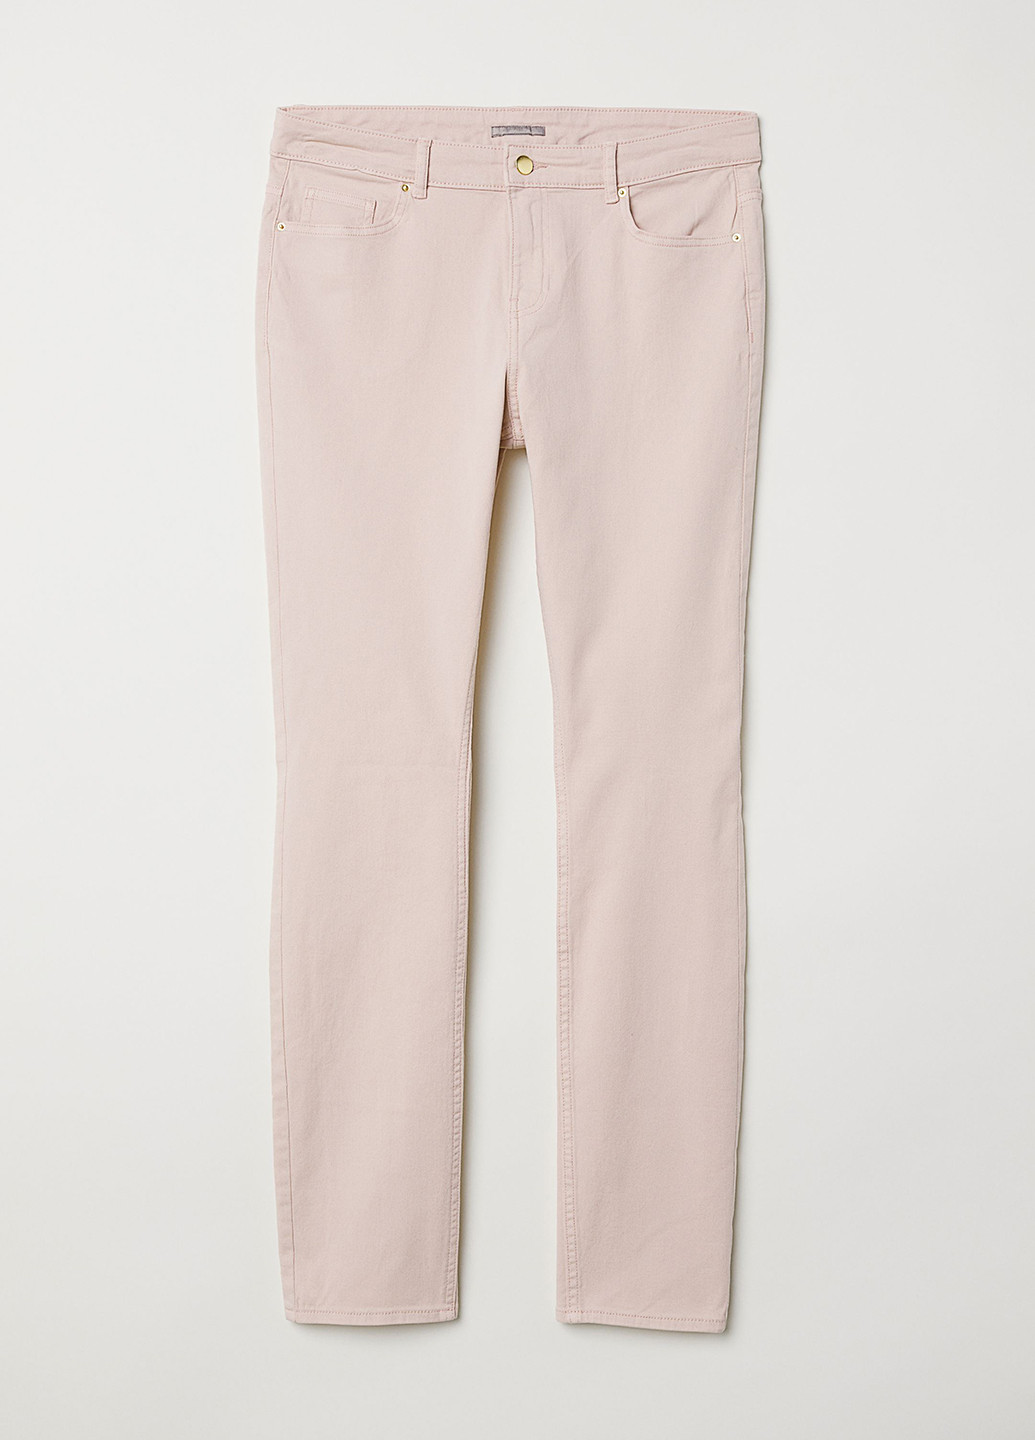 Светло-розовые джинсовые демисезонные зауженные брюки H&M